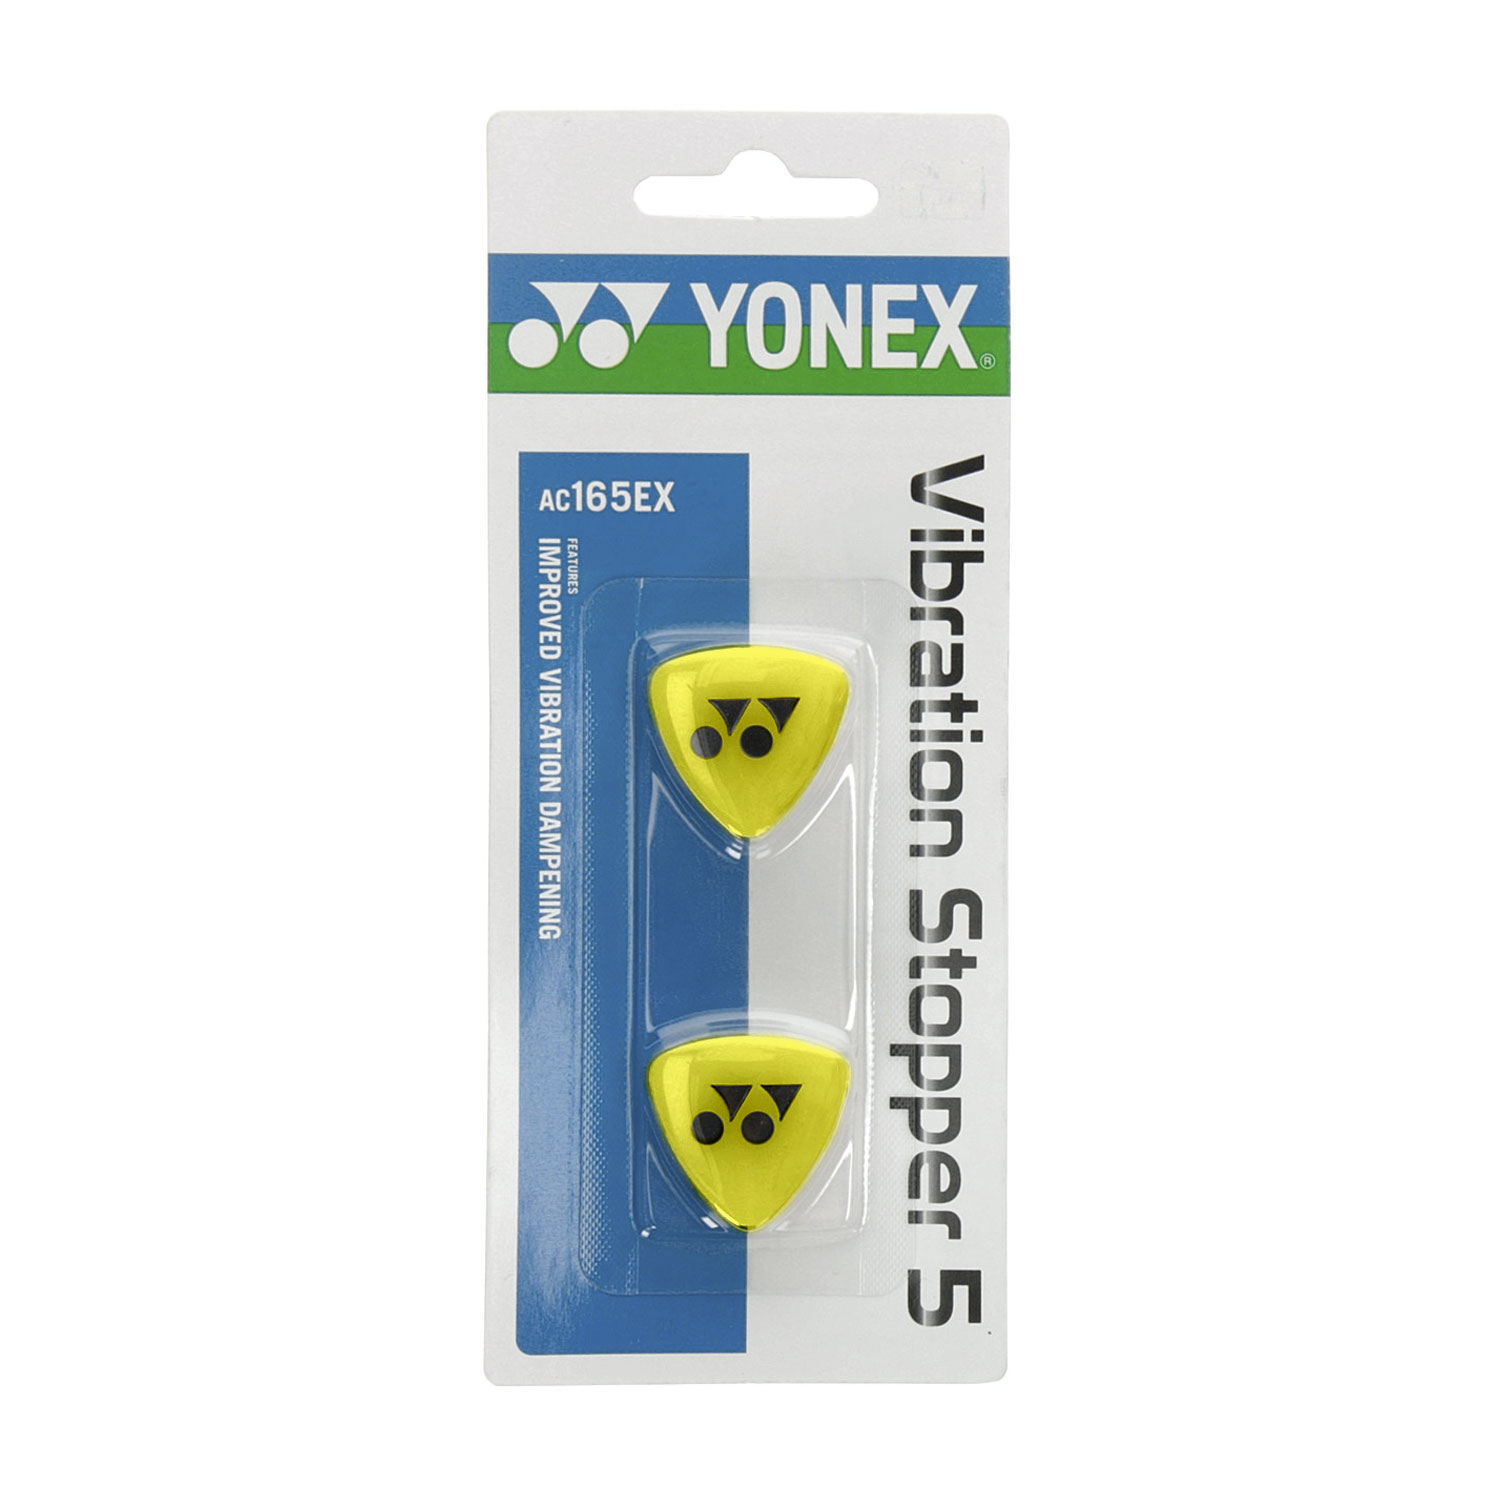 Yonex Vibration Stopper 5 Dampeners - Black/Yellow